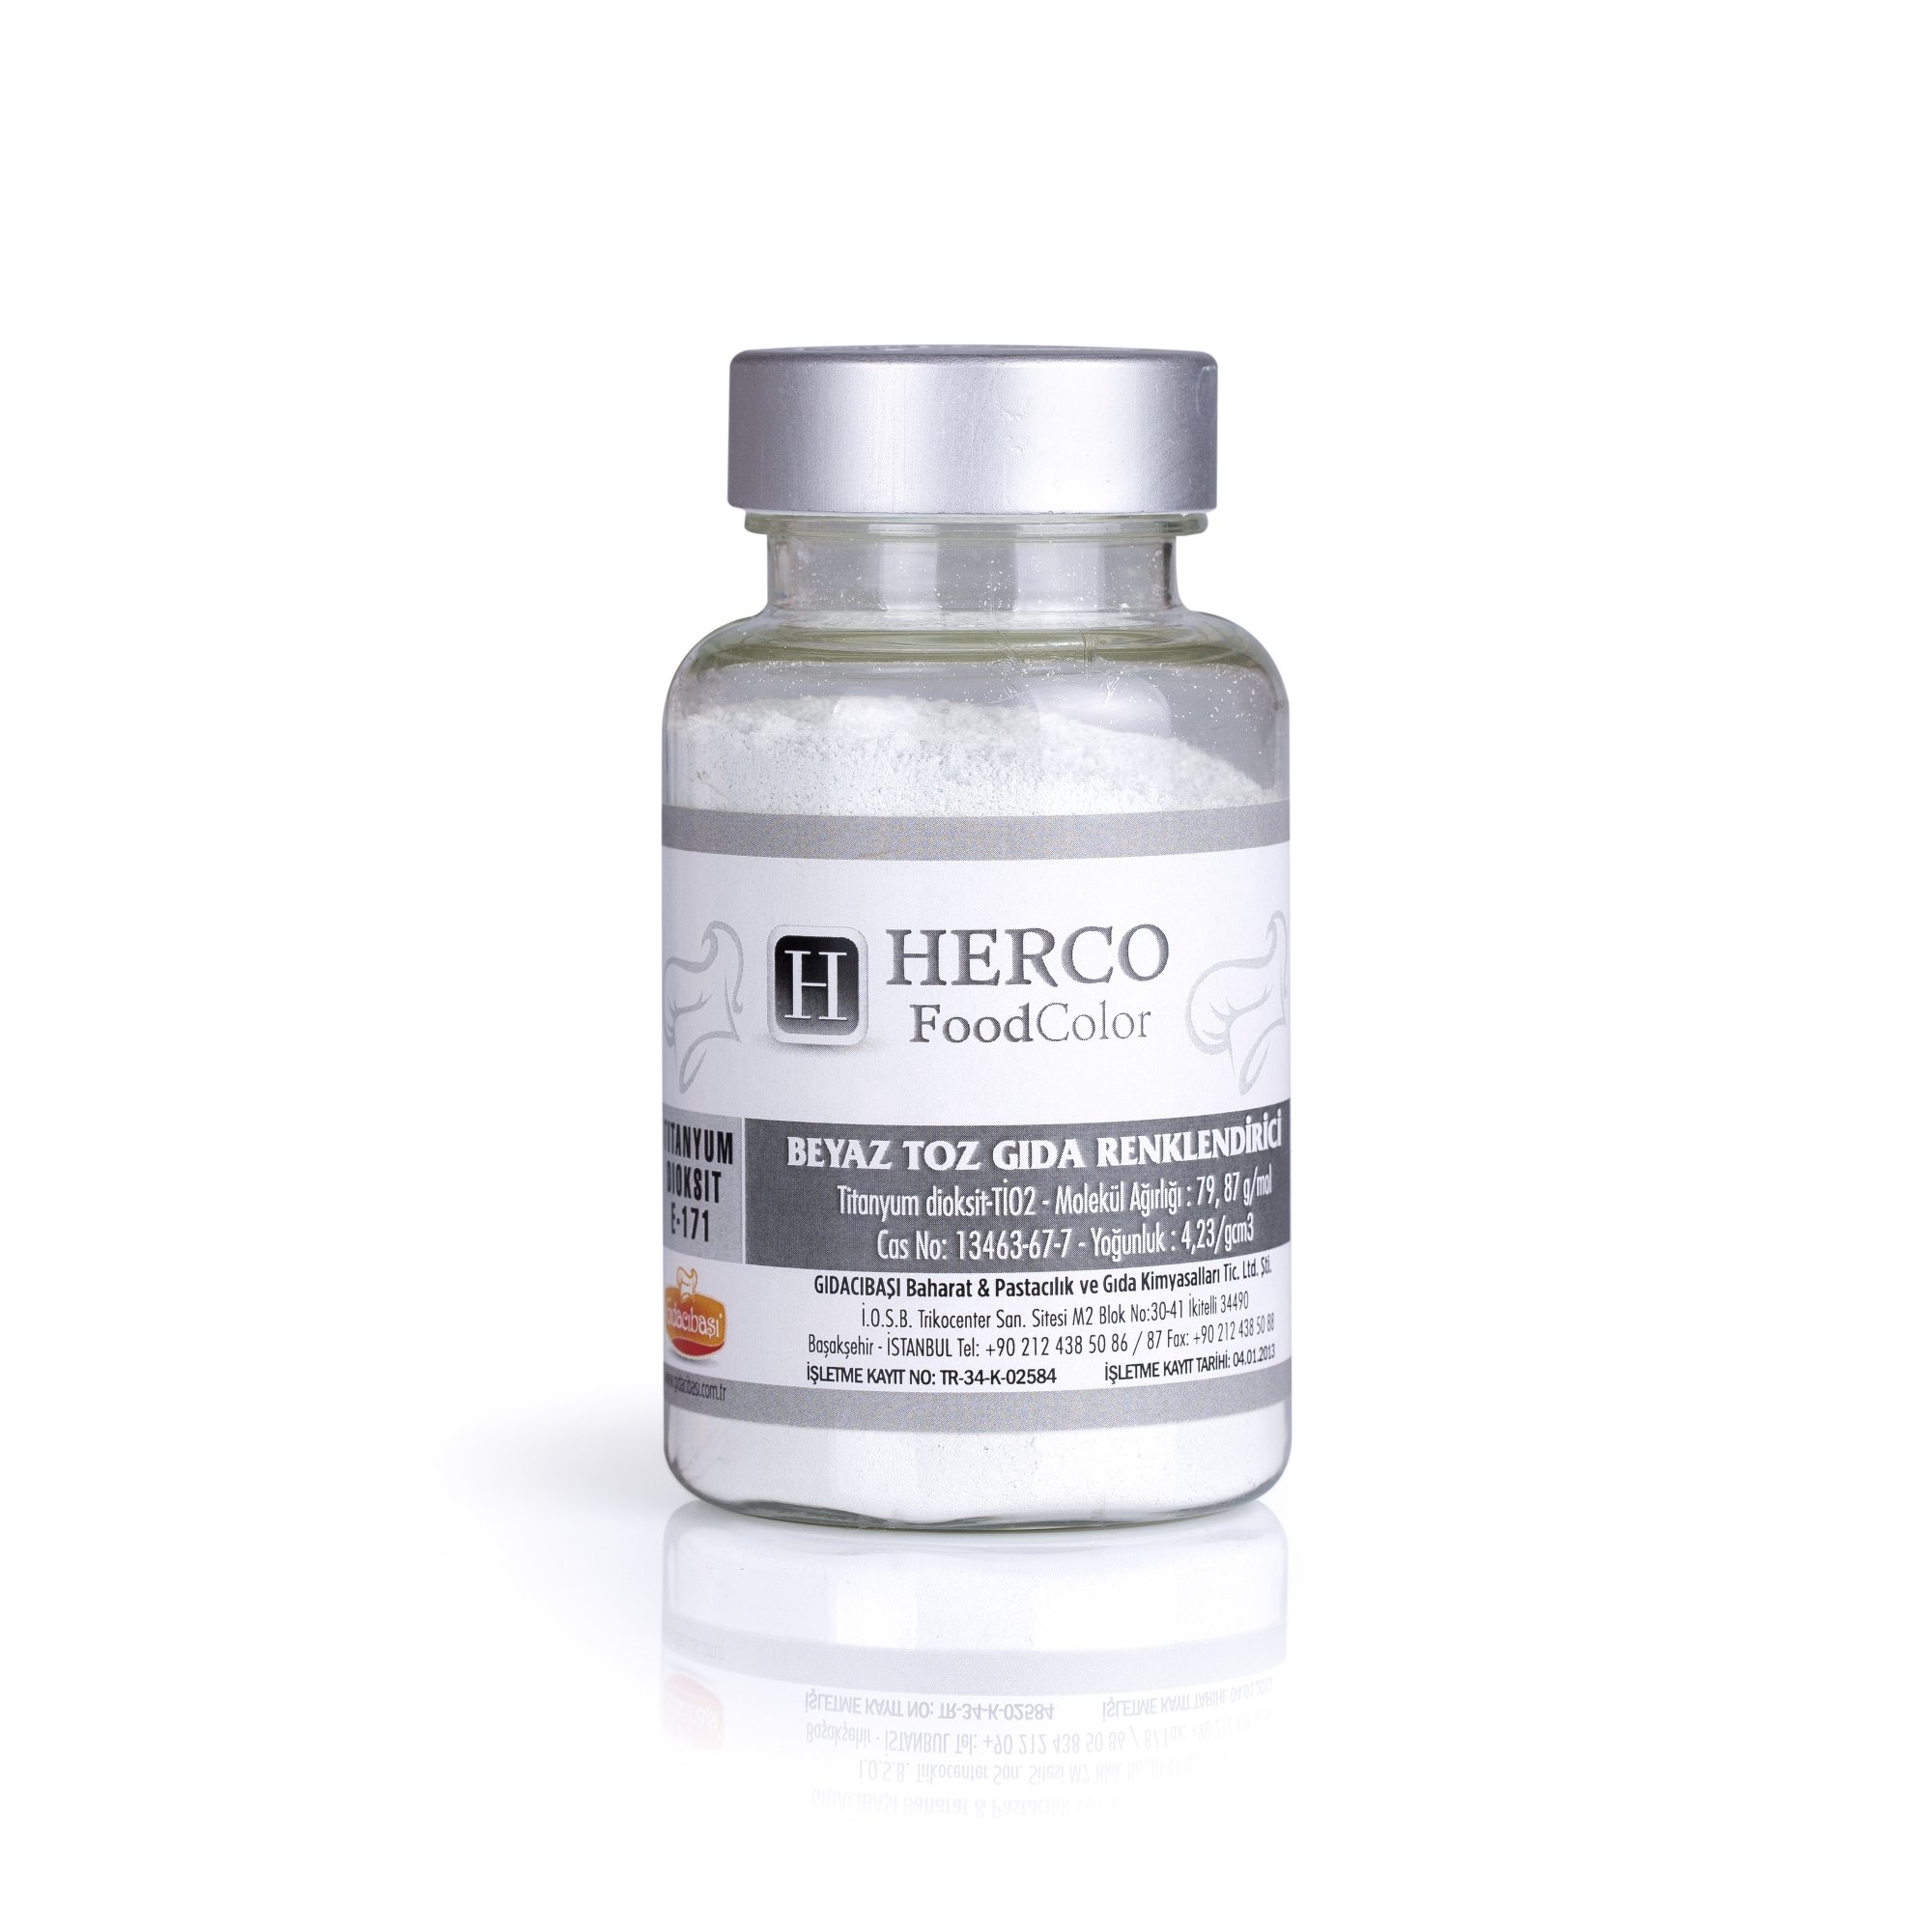 Beyaz Toz Boya Gıda Renklendirici- Herco FoodColor